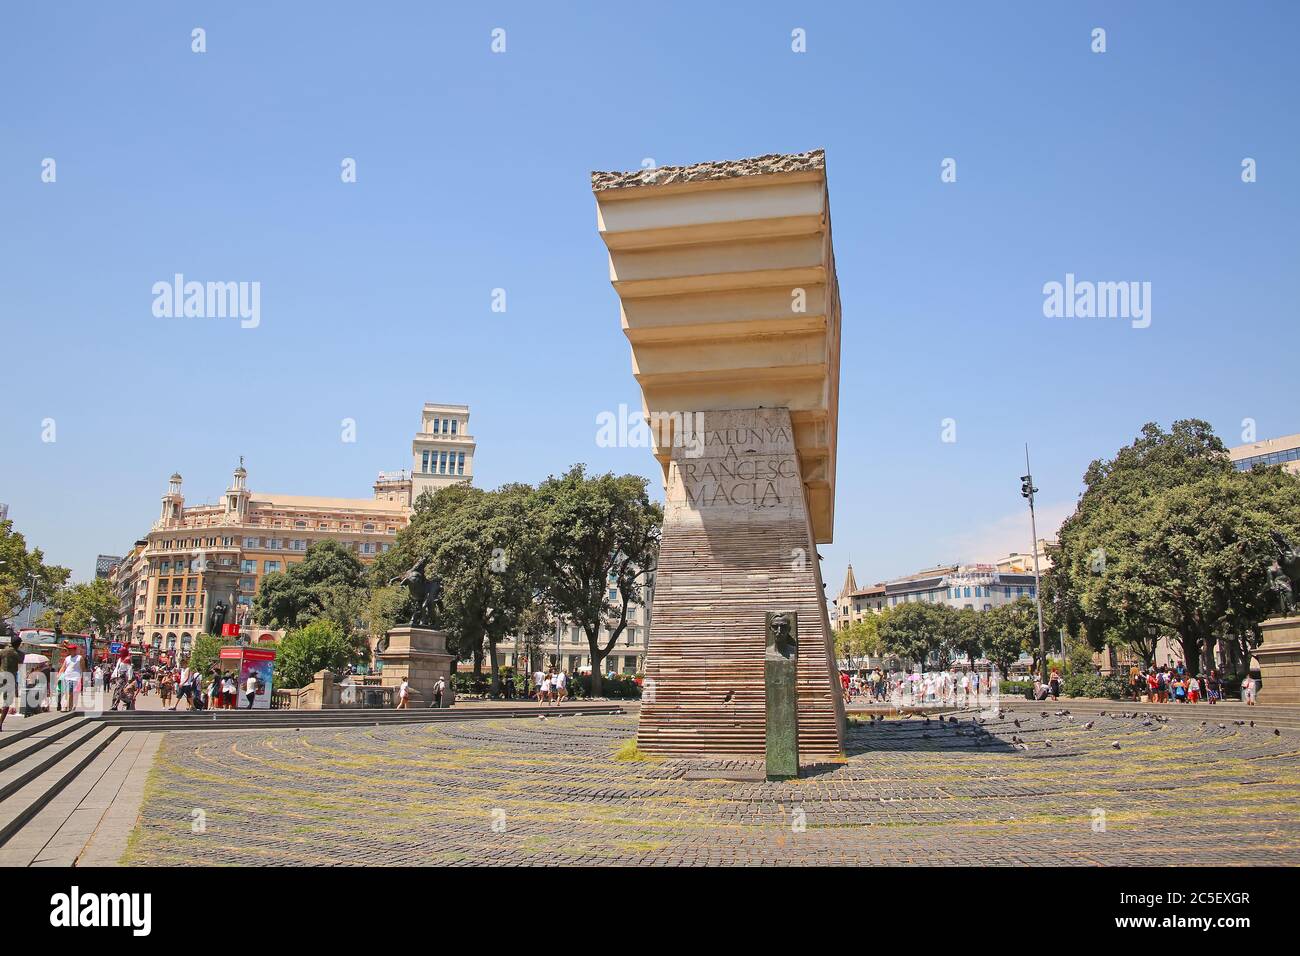 Bella scultura al centro della città, nel centro della zona, Placa de Catalunya o Catalonia Square, Barcellona, Spagna. Foto Stock